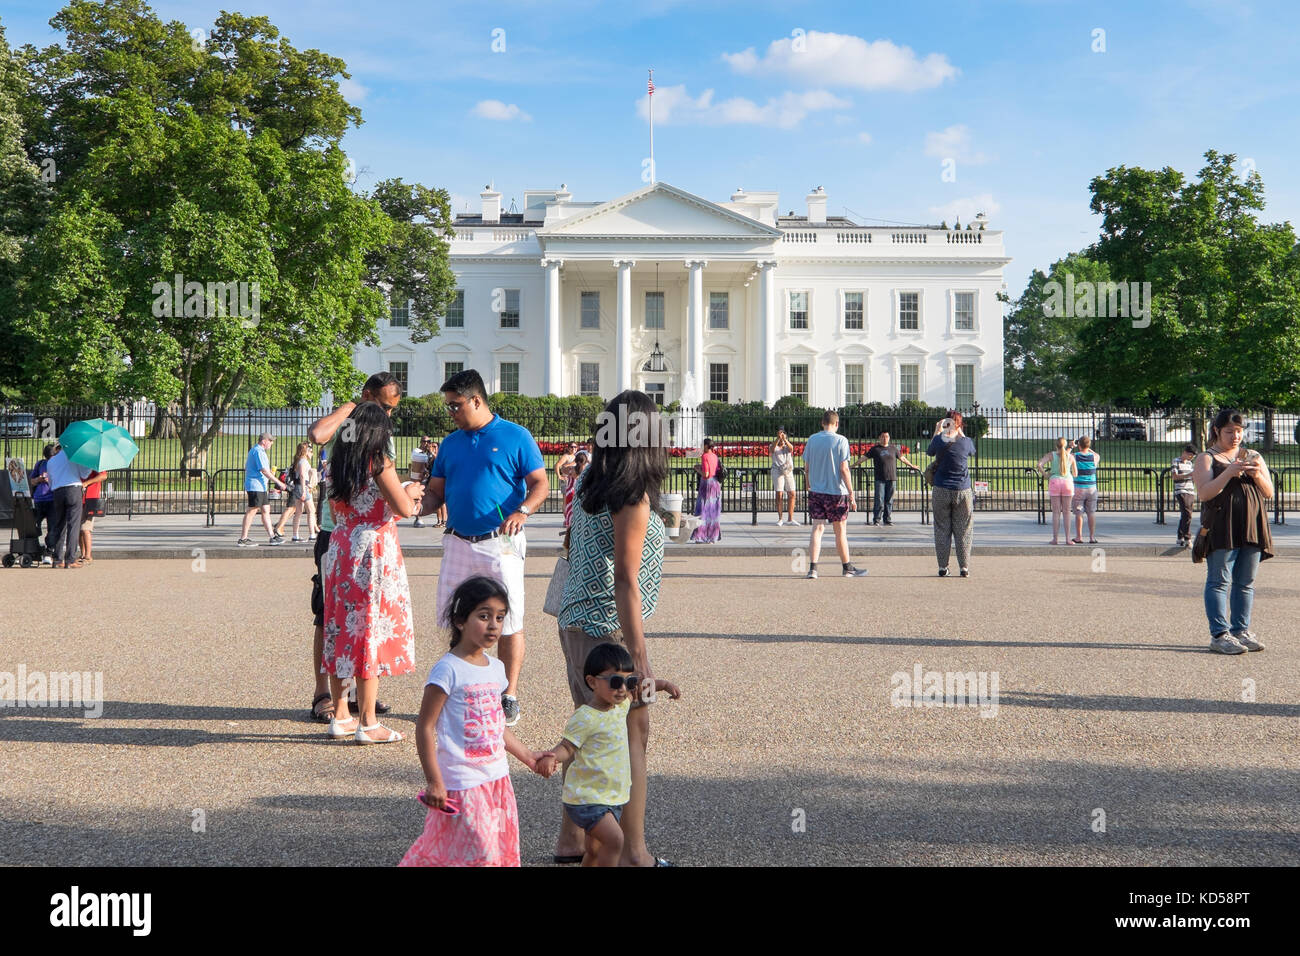 Washington DC - 26. Mai 2015: whitehouse von vorne an einem Sommertag mit blauem Himmel und weißen Wolken Puffy gesehen. Besucher auf dem pedes Wandern Stockfoto